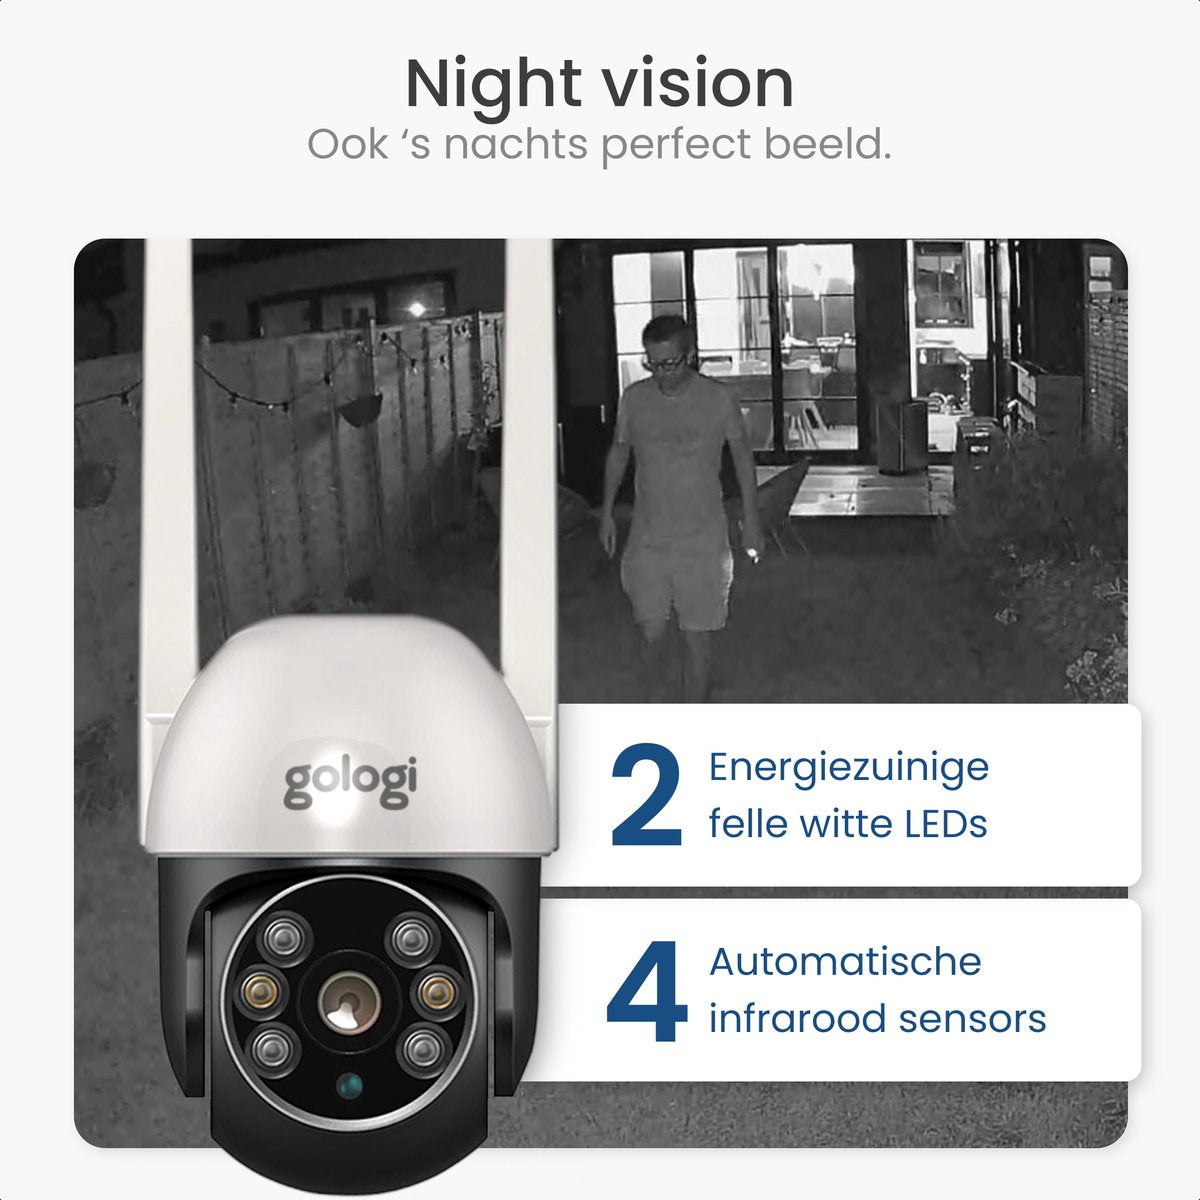 Gologi outdoor camera - Buiten camera met nachtzicht - Beveiligingscamera - IP camera -  Security camera - 4x Digitale zoom - 3MP - Met wifi en app